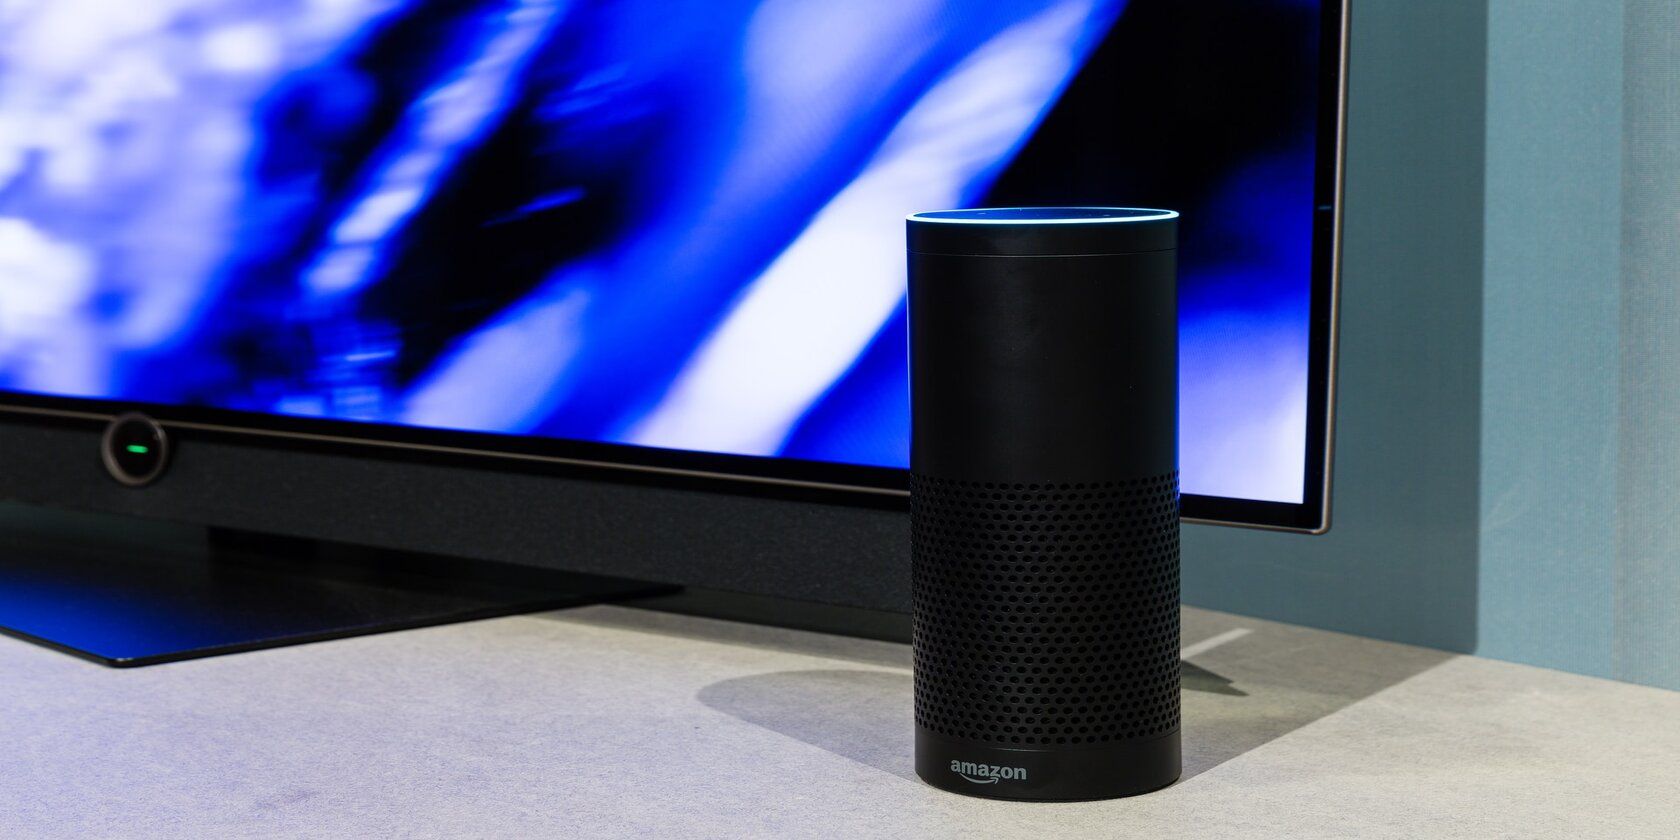 Amazon echo speaker beside a TV